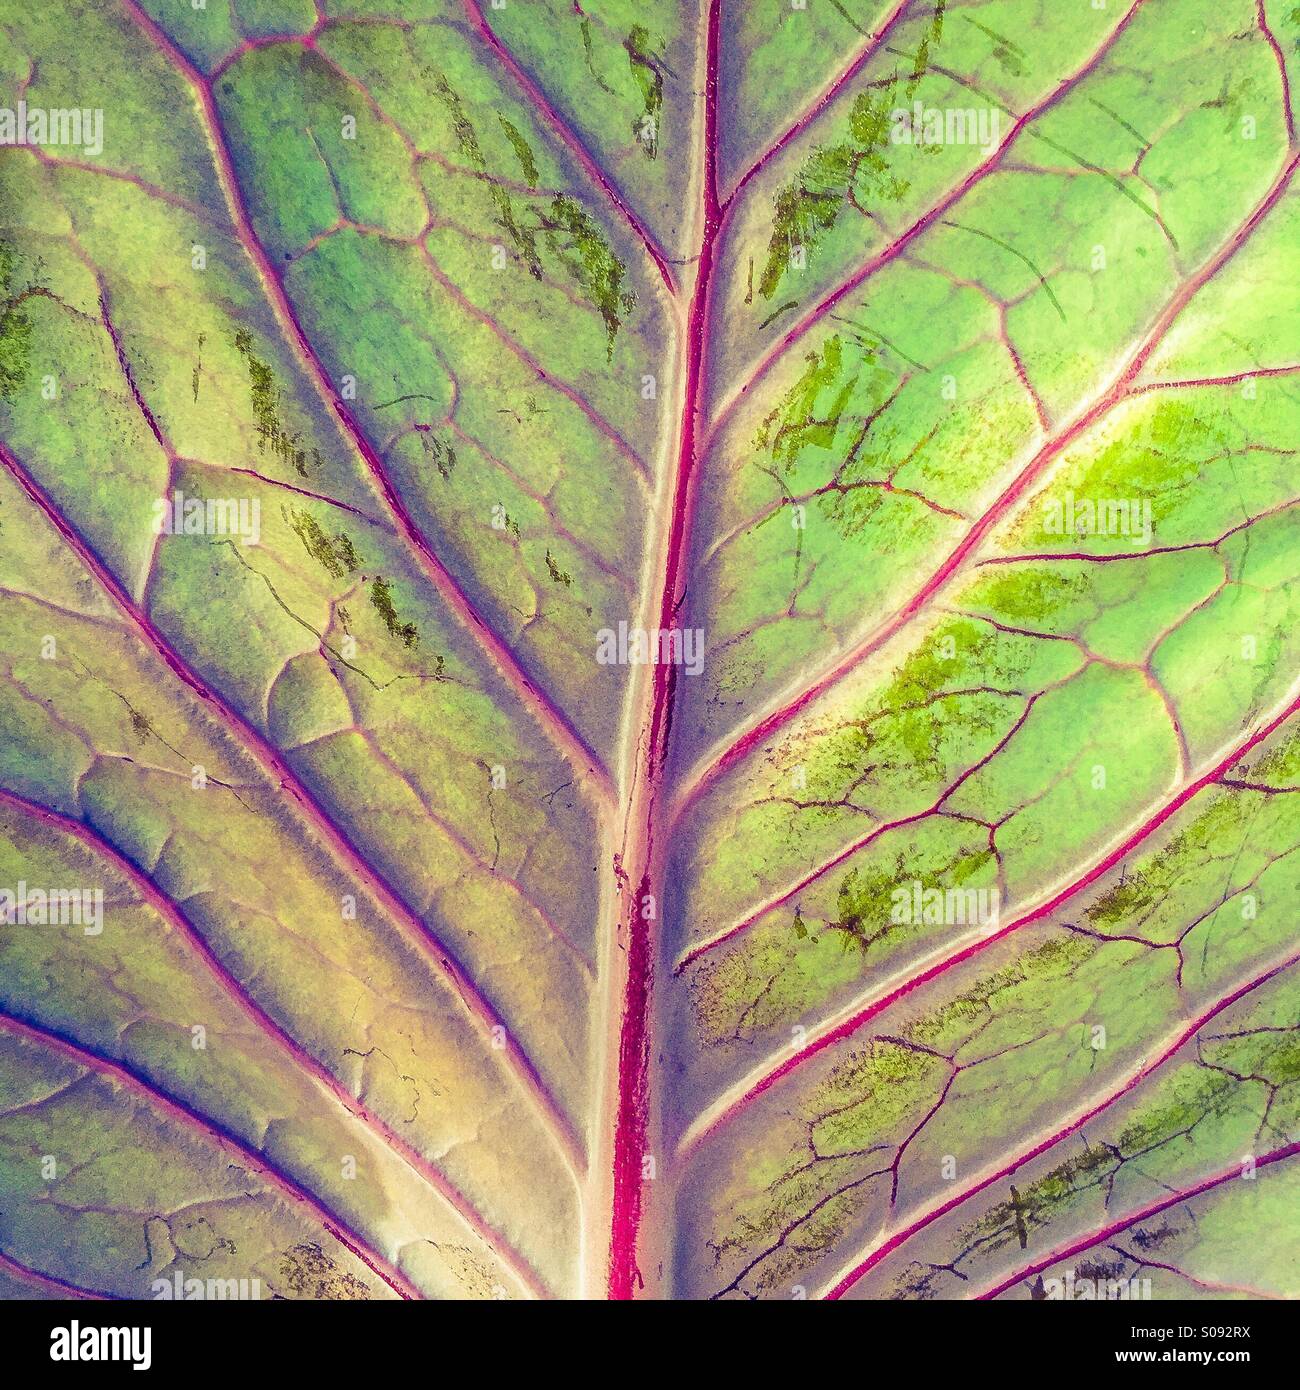 Plant veins Stock Photo